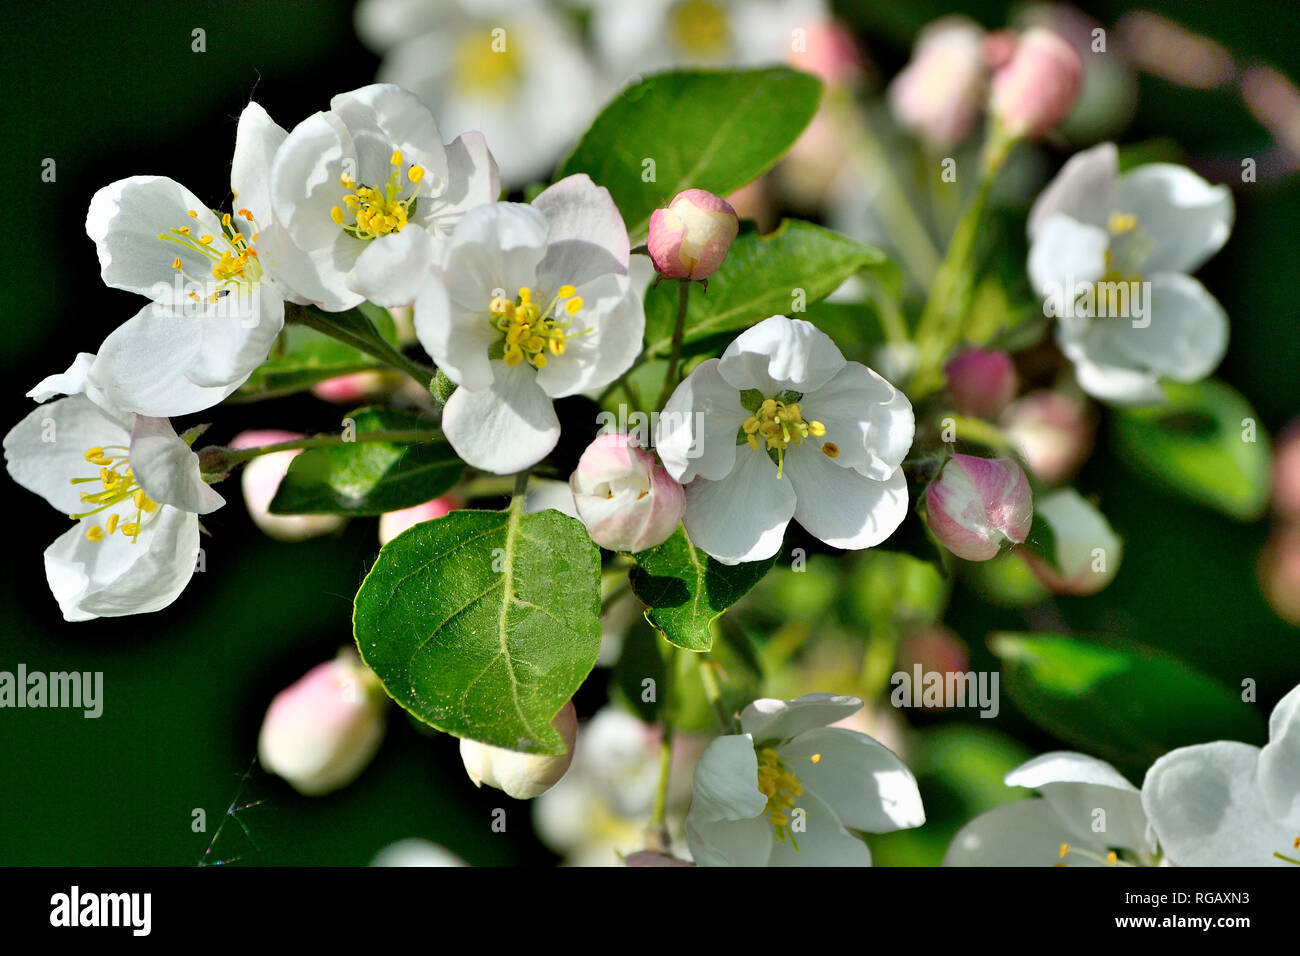 Apple Tree Blossom close up auf dunklem Hintergrund - sanfte Frühling Hintergrund. Apple tree Zweig mit weißen Blumen, rosa Knospen und grüne Blätter - Schönheit o Stockfoto